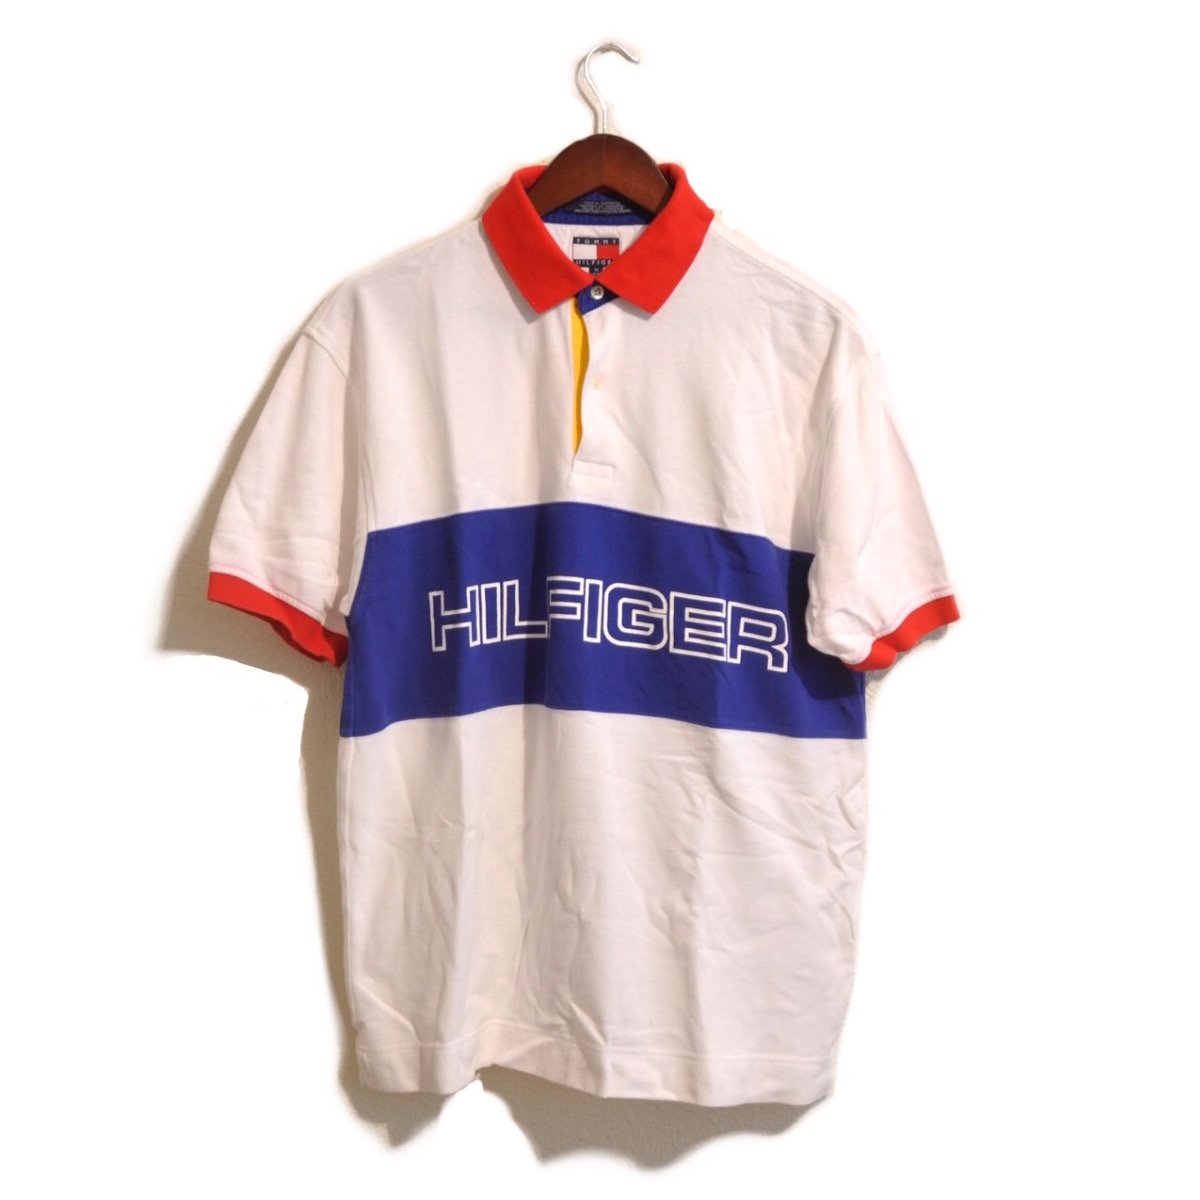 tommy hilfiger vintage fit shirt